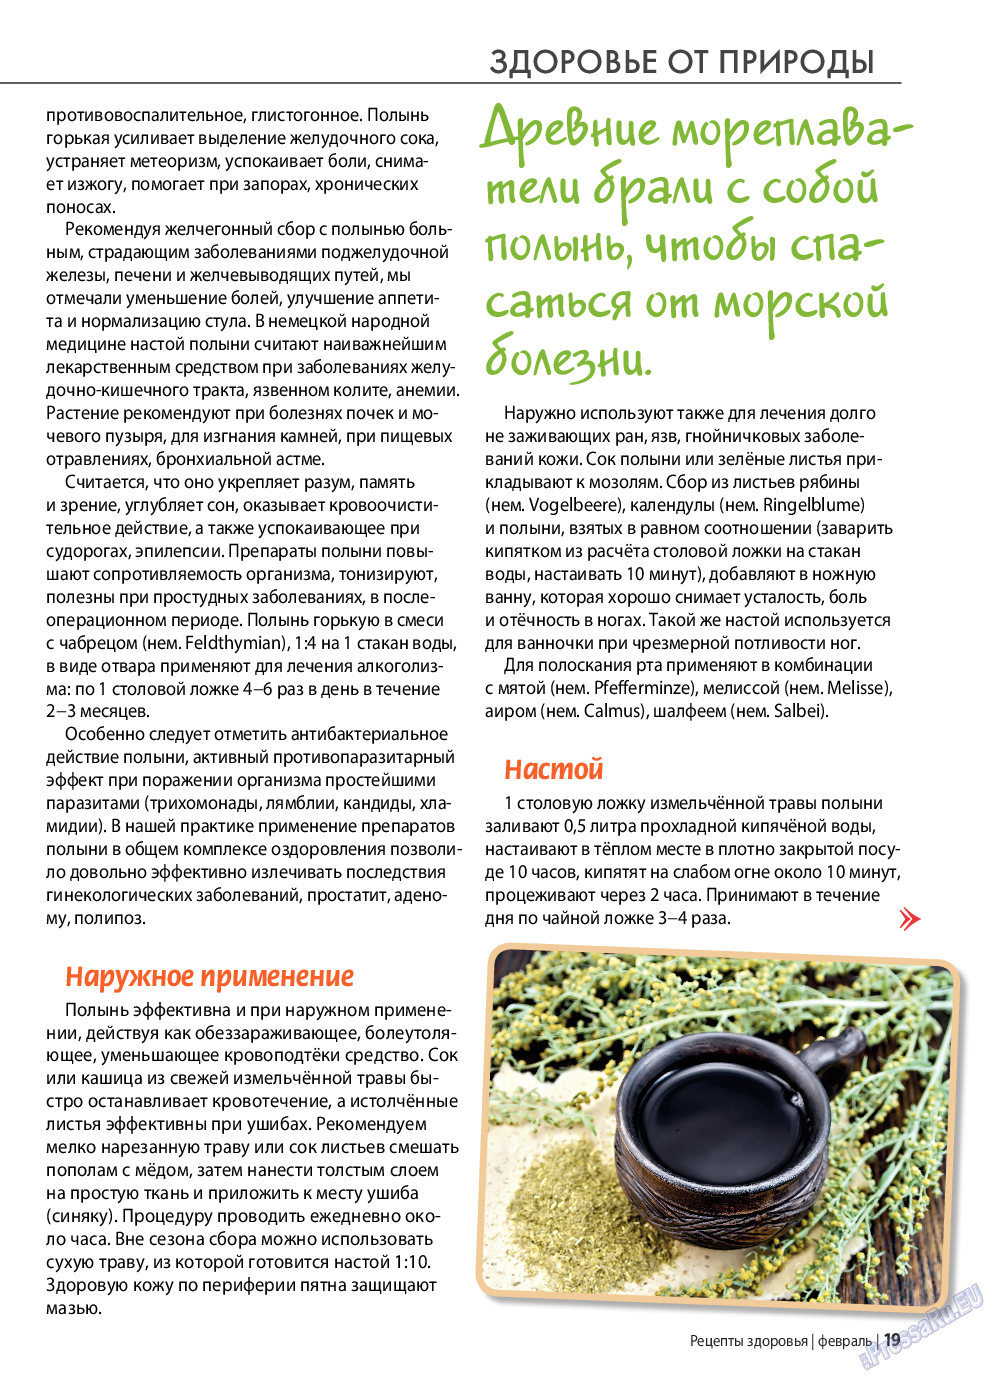 Рецепты здоровья, журнал. 2022 №153 стр.19